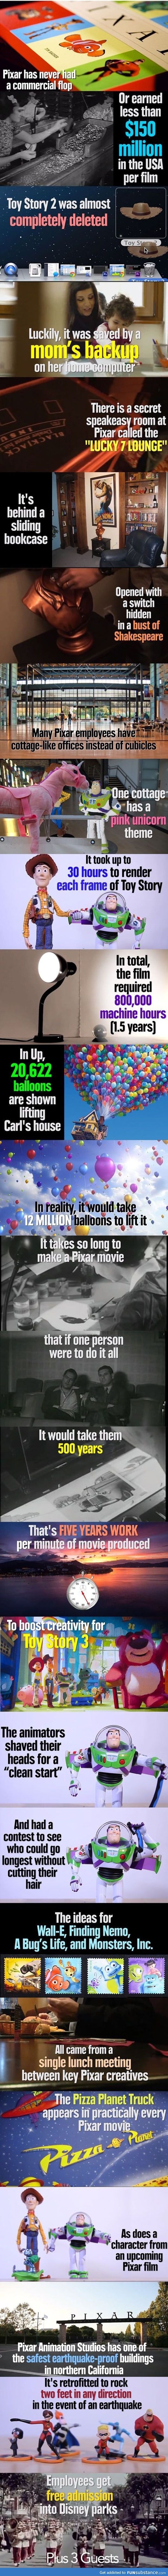 Awesome Pixar